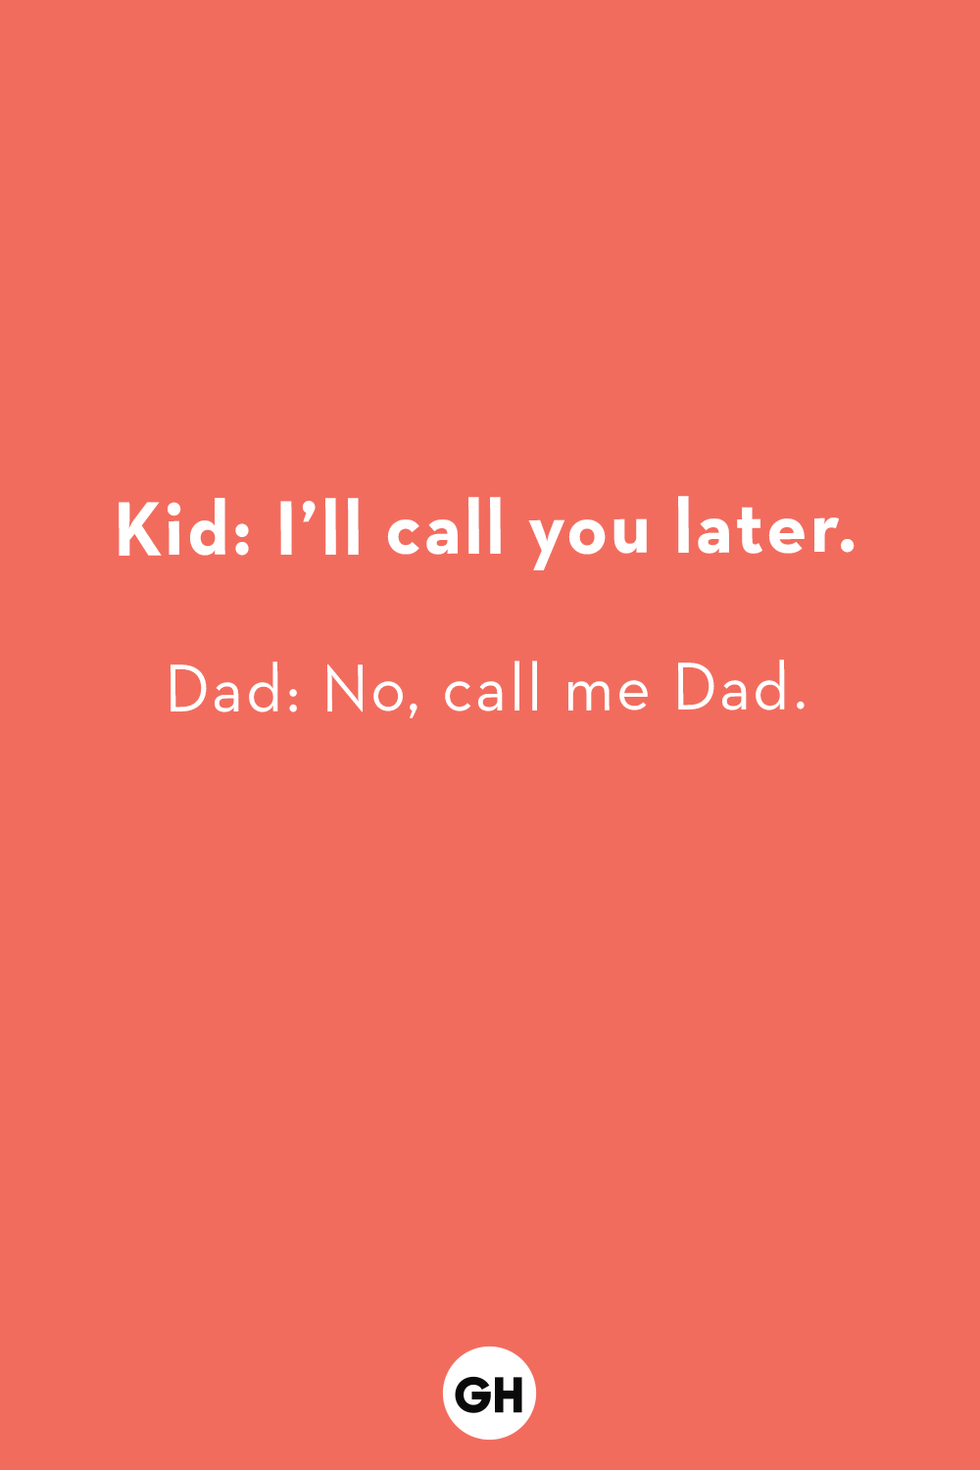 dad jokes for kids  responses to kids dad jokes